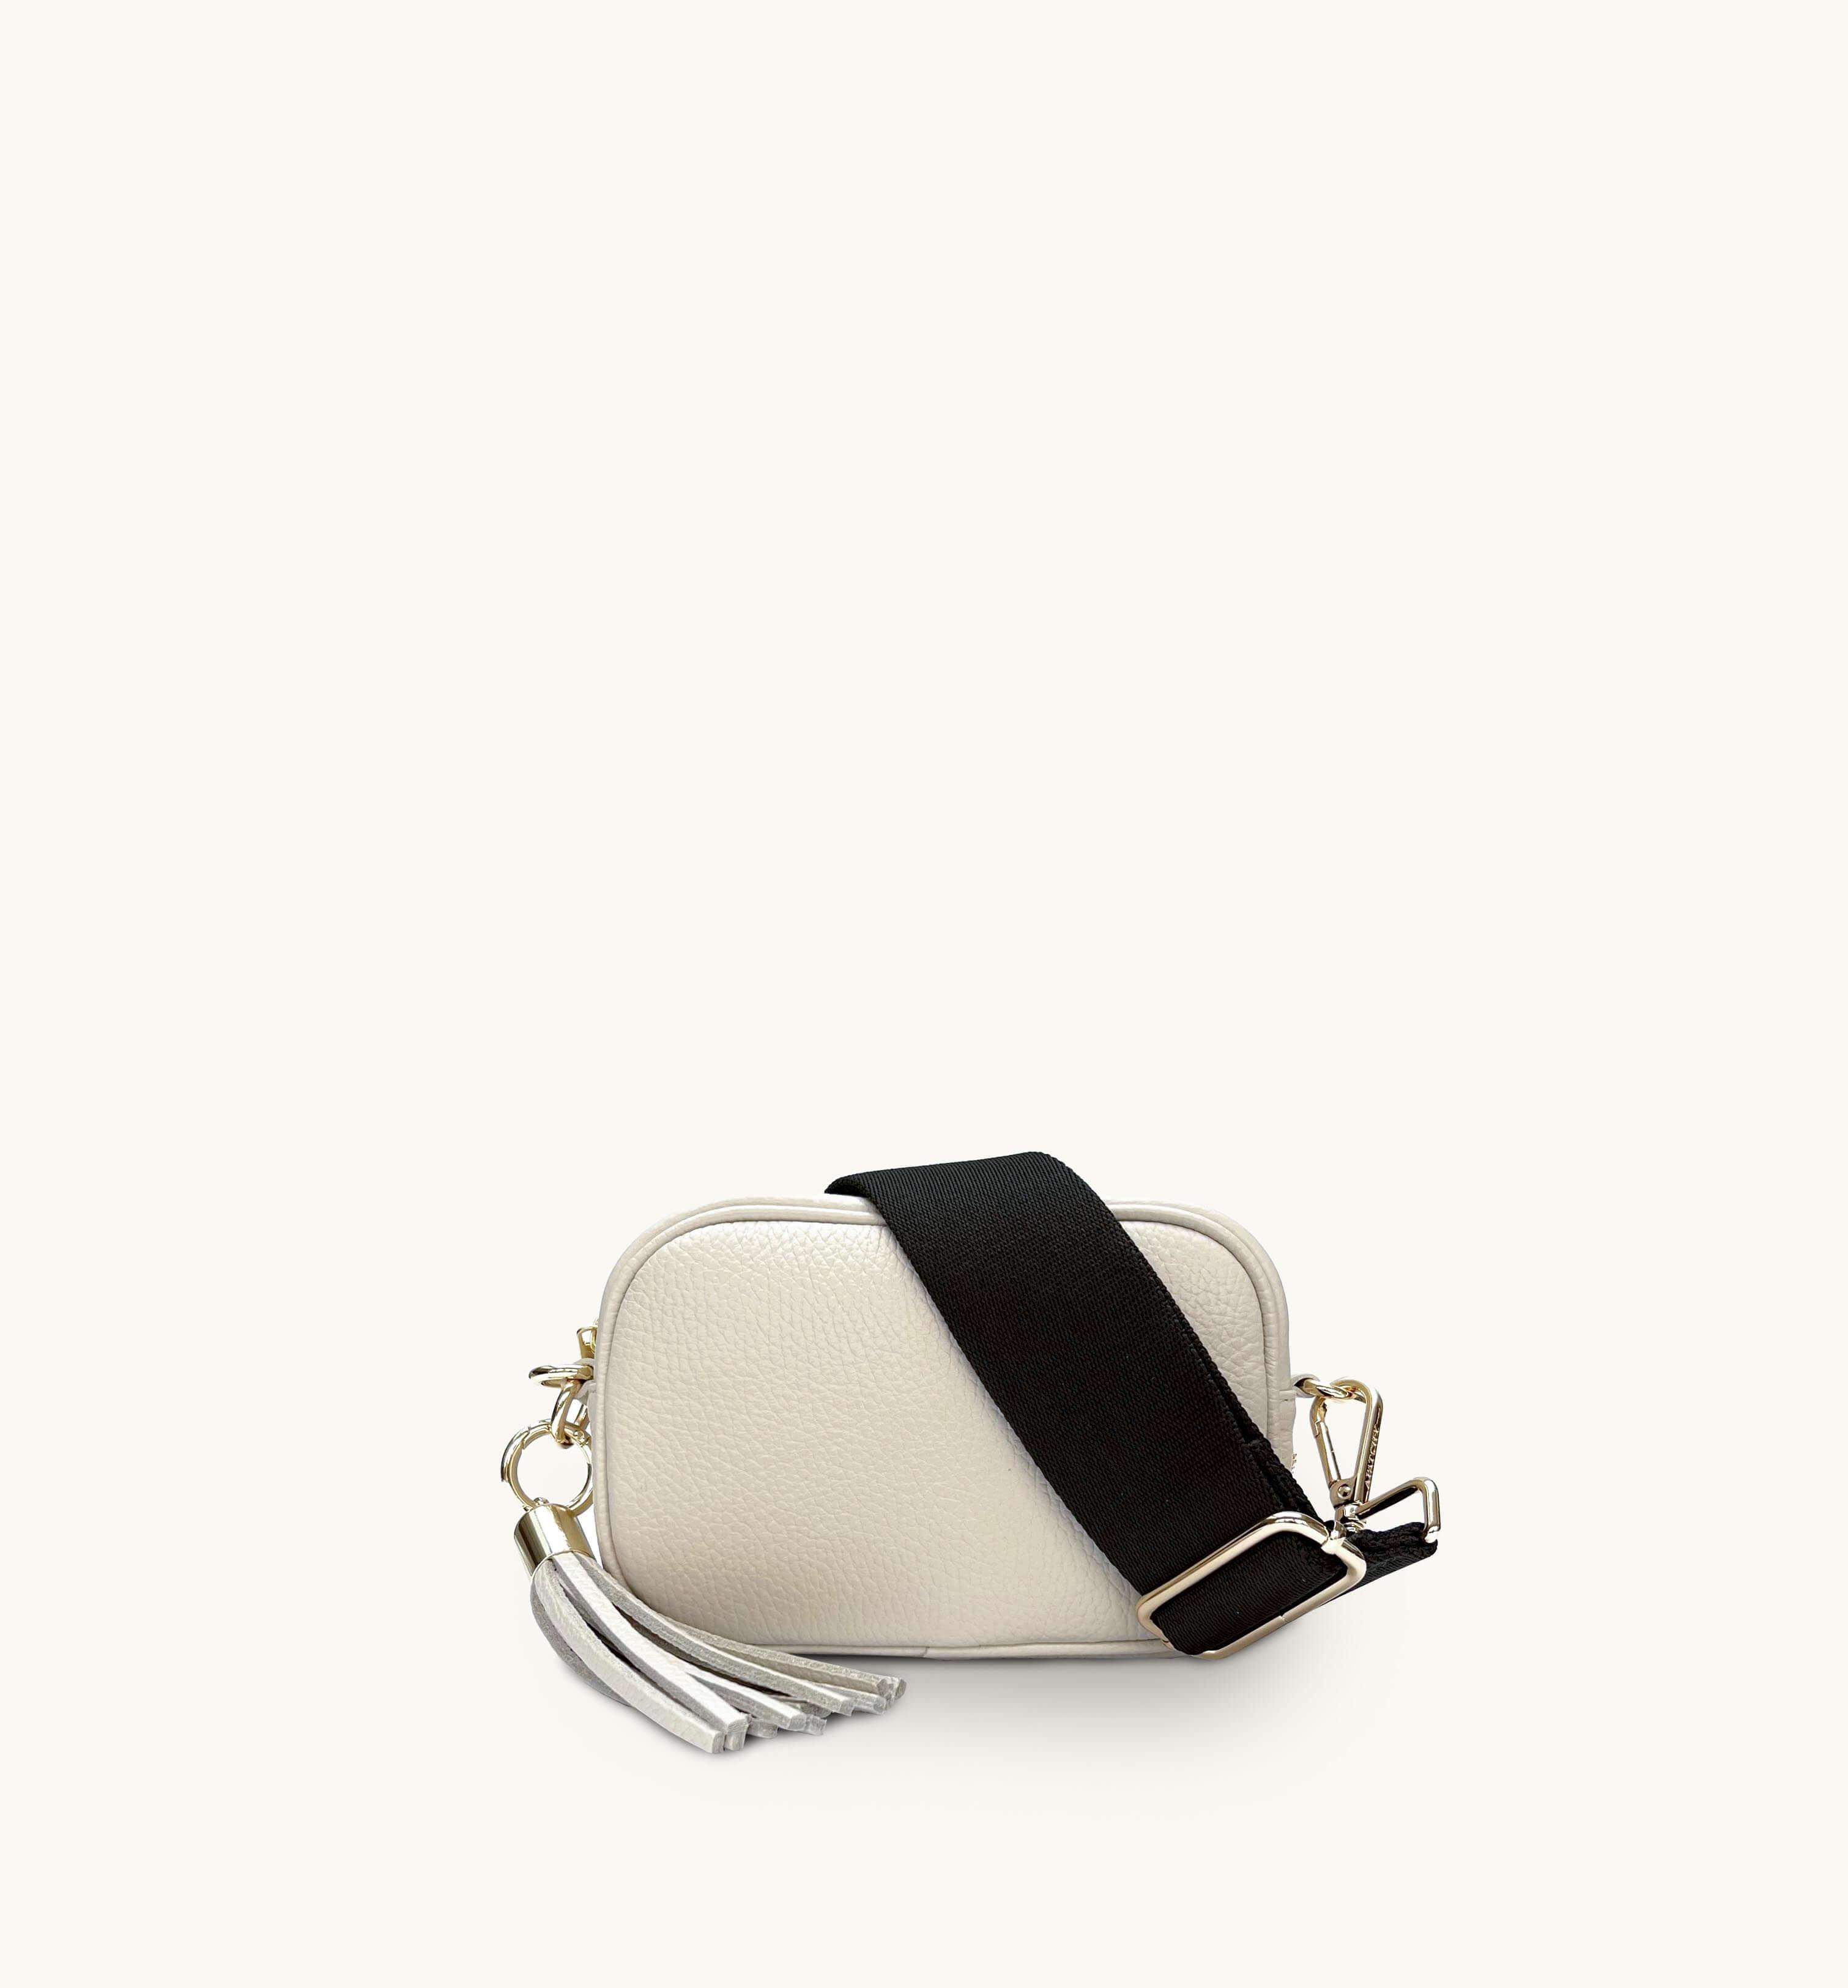 Миниатюрная кожаная сумка для телефона с кисточками и простым ремешком цвета хаки Apatchy London, бежевый женская кожаная сумка 1835 х28 хаки 110007